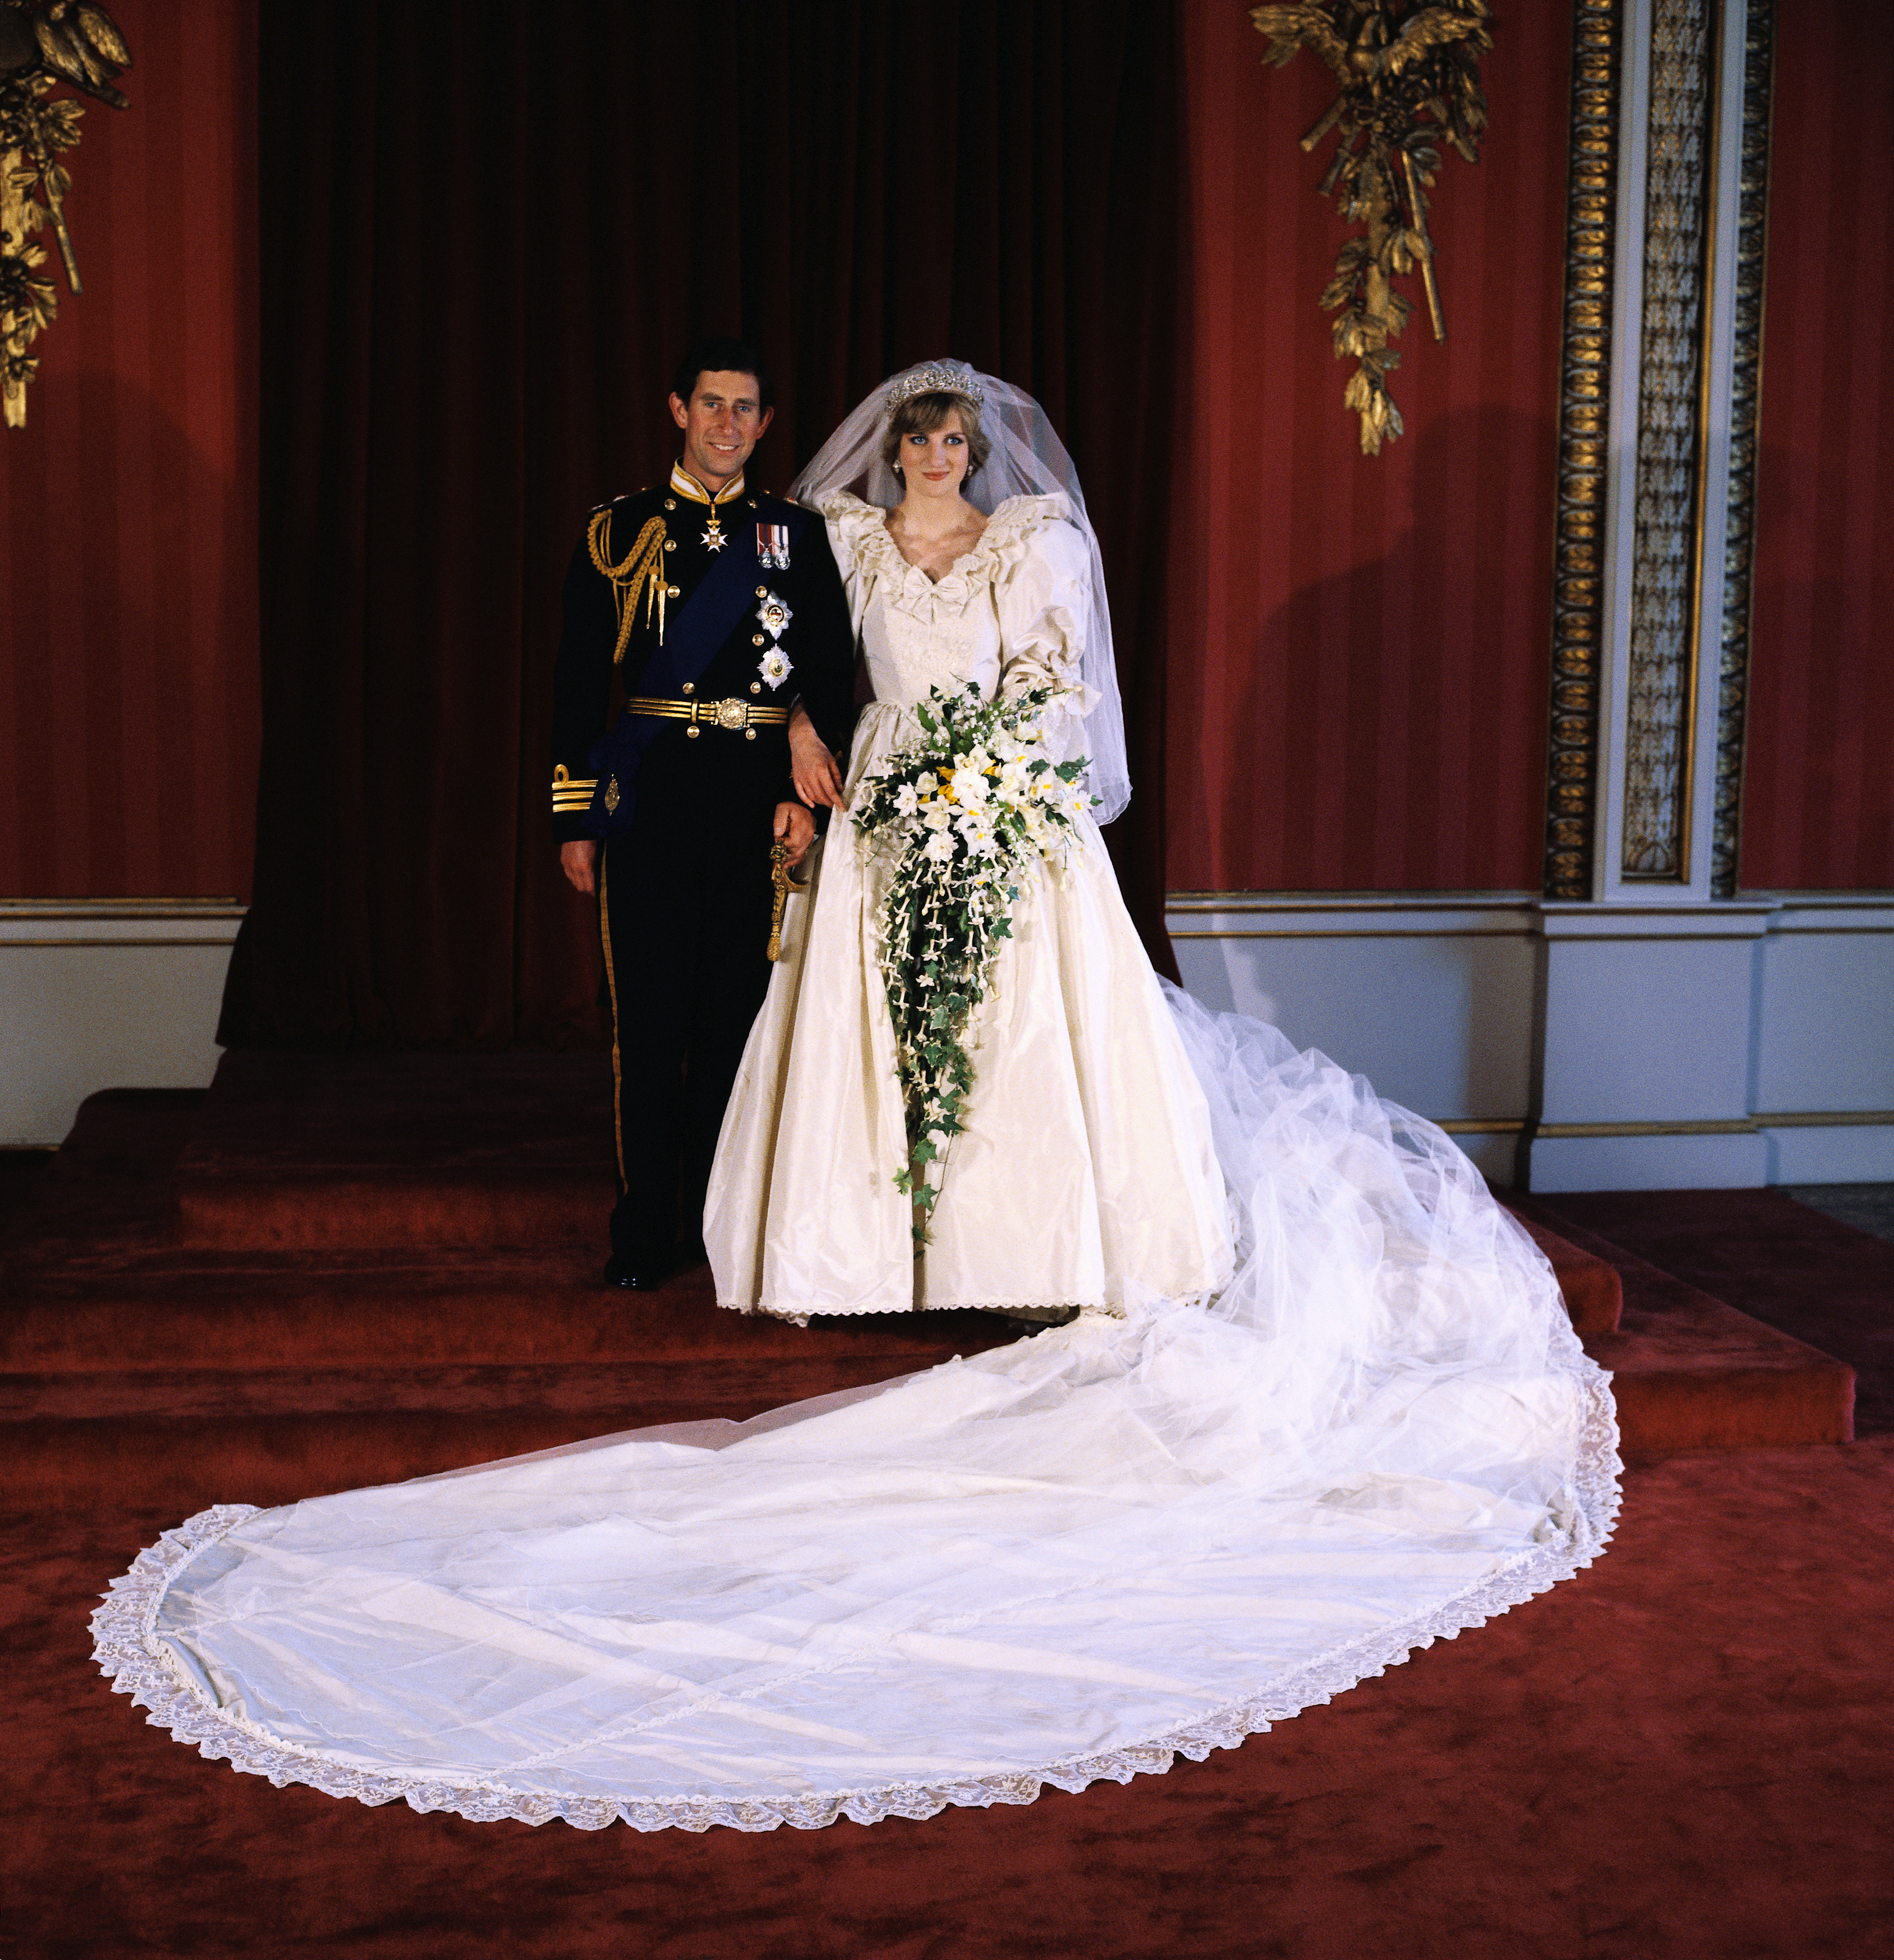 Príncipe Charles e Princesa Diana posando para a foto oficial do casamento, feita pelo Lorde Lichfield no Buckingham Palace, após cerimônia na Catedral de São Paulo, em Londres. eles estão com as vestes do casamento em uma sala com tons majoritariamente vermelhos